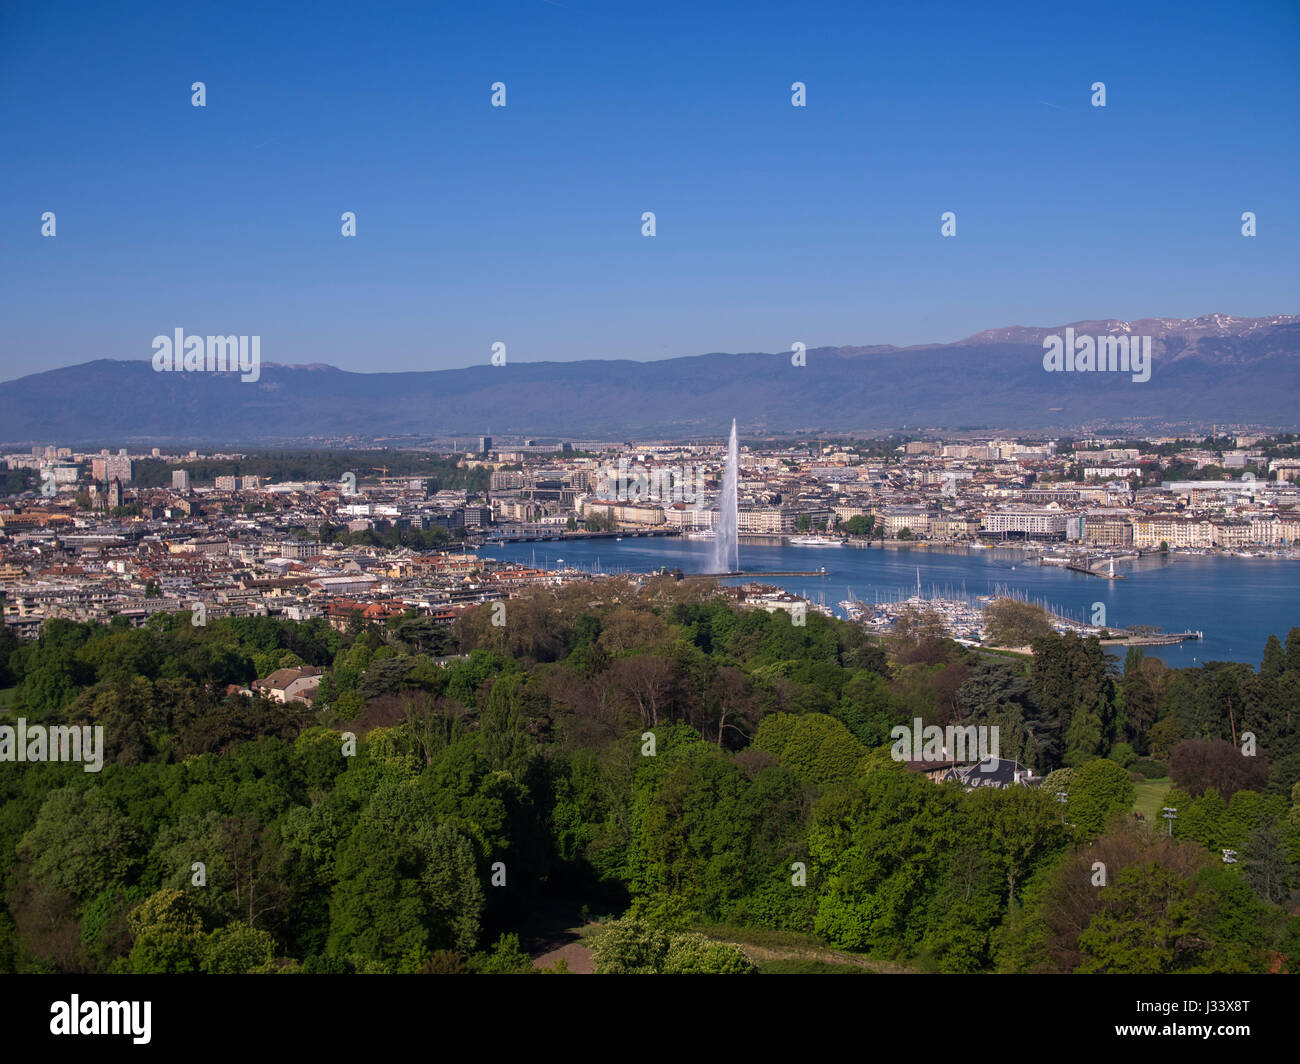 Luftbild von der Stadt Genf mit Springbrunnen Jet d ' Eau und Genfer See Stockfoto